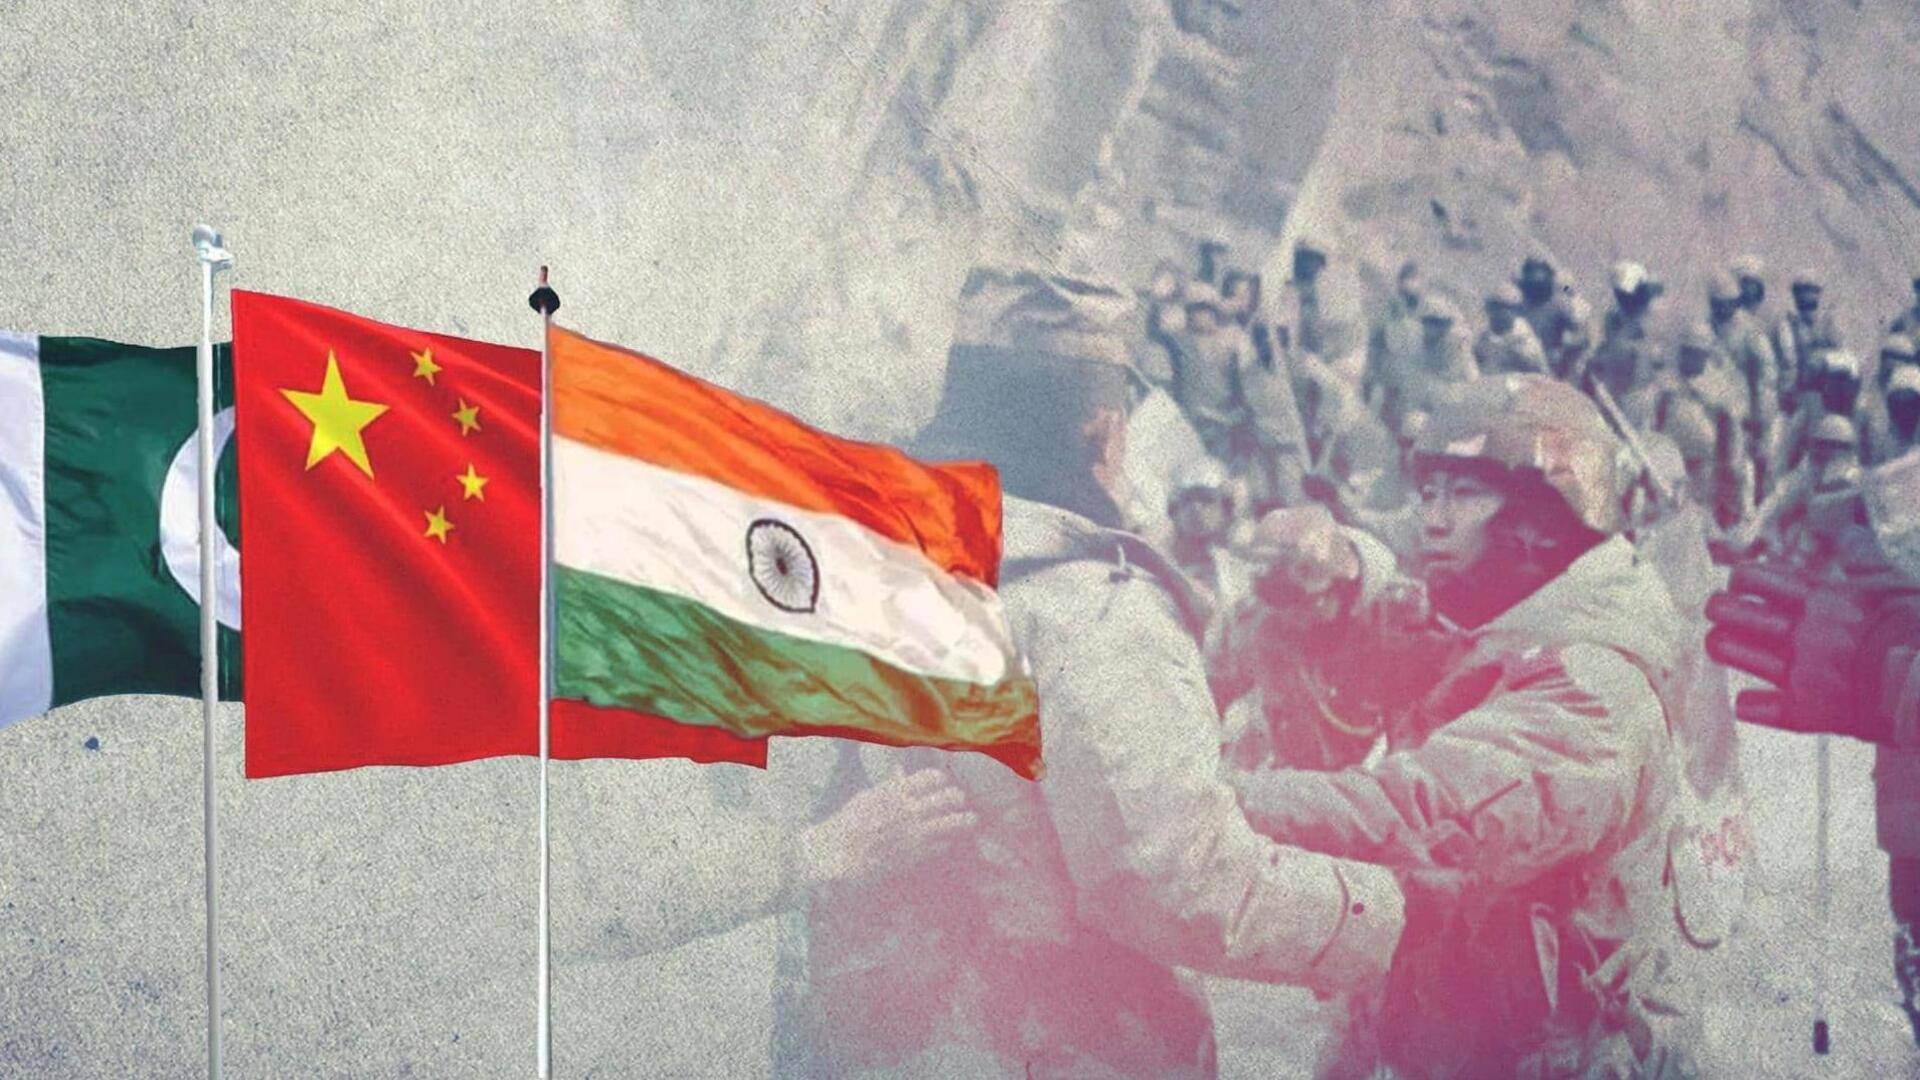 राजौरी-पुंछ हमलों के पीछे चीन और पाकिस्तान की बड़ी साजिश? लद्दाख से सेना हटवाने की योजना